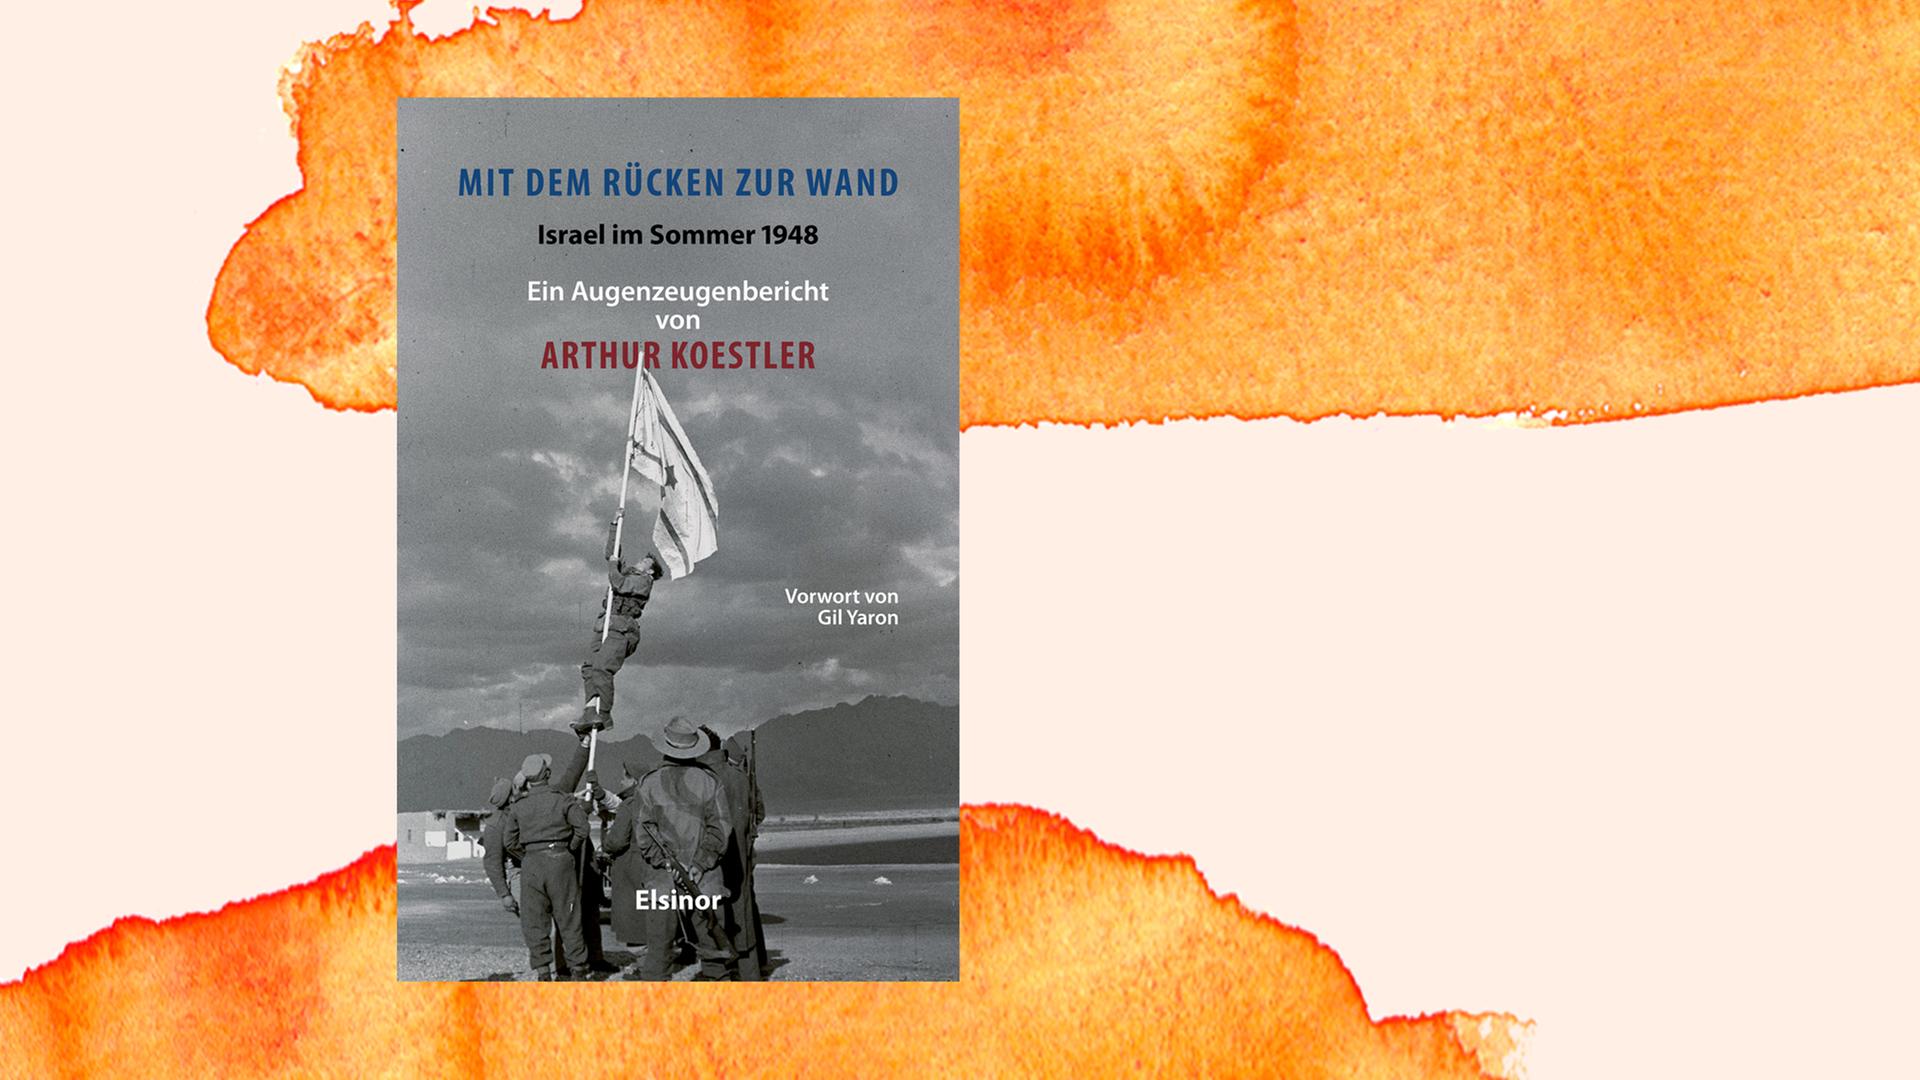 Coverabbildung von Arthur Koestlers Buch "Mit dem Rücken zur Wand".